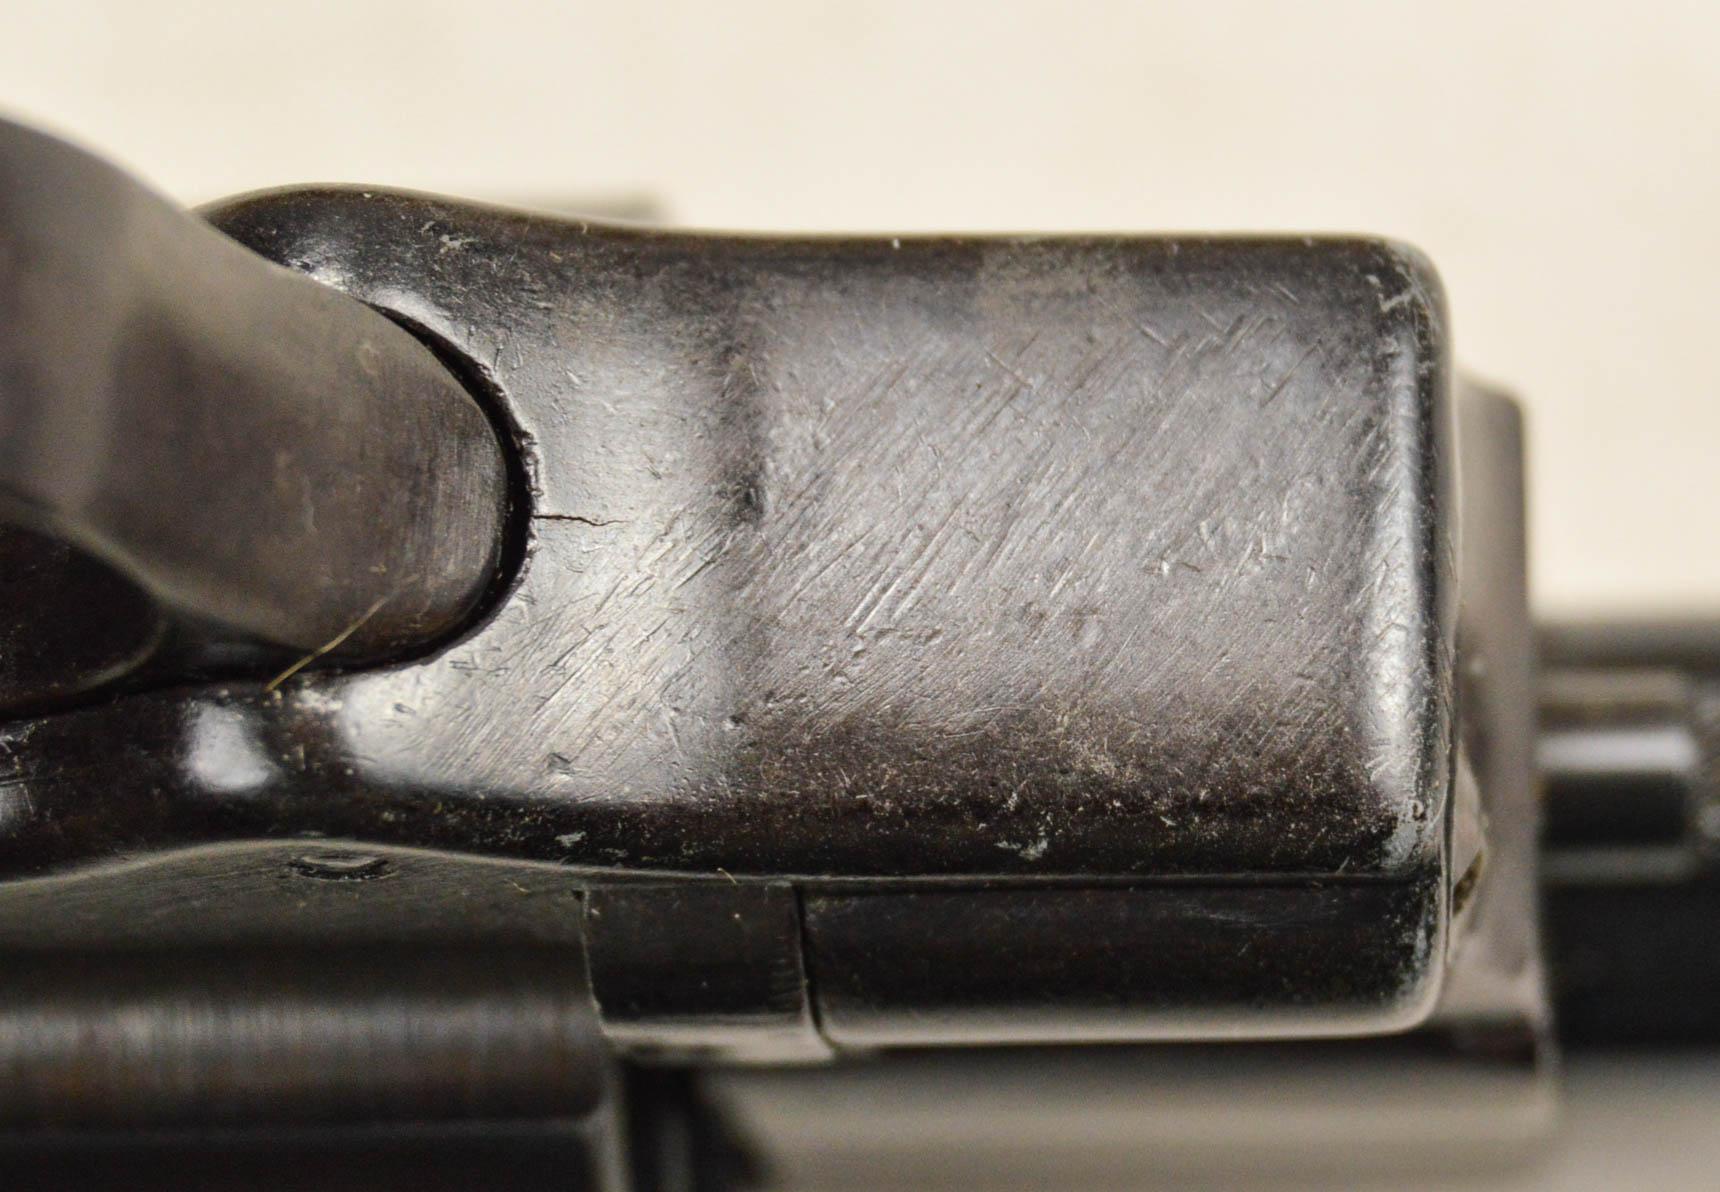 Arminius 38 38 Caliber Revolver